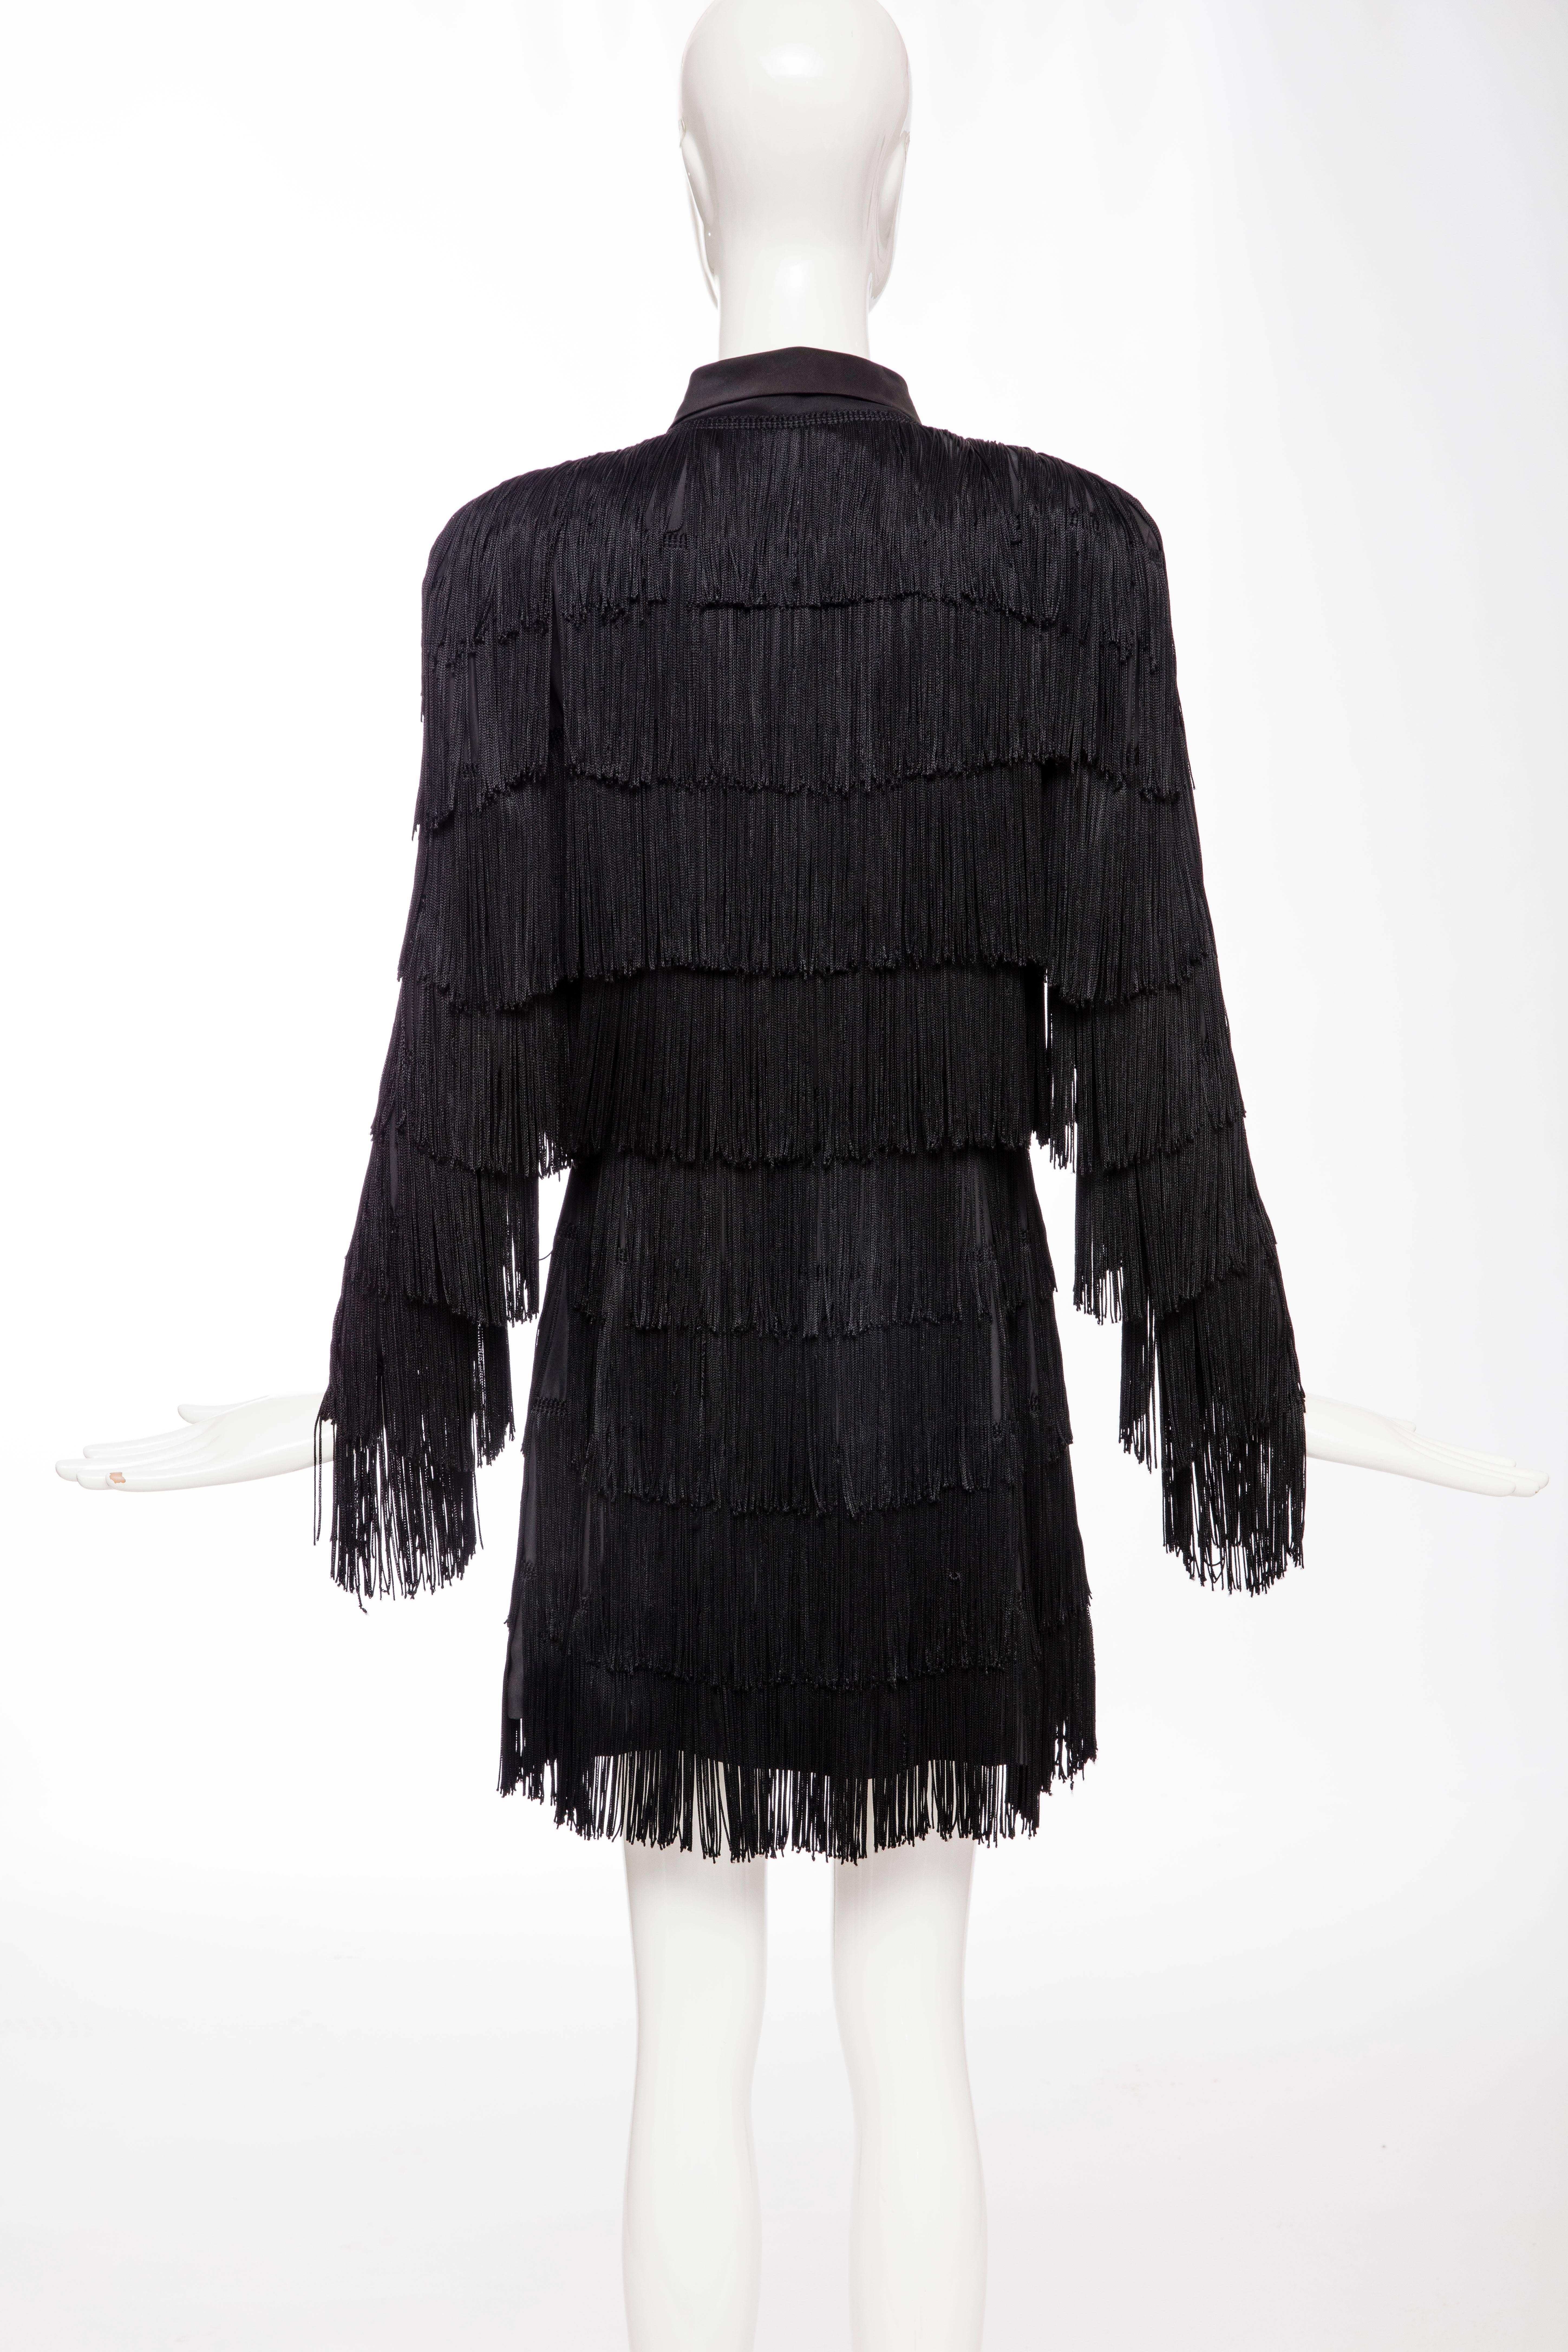 Women's Norma Kamali OMO Black Fringe Long Jacket, Circa 1980's